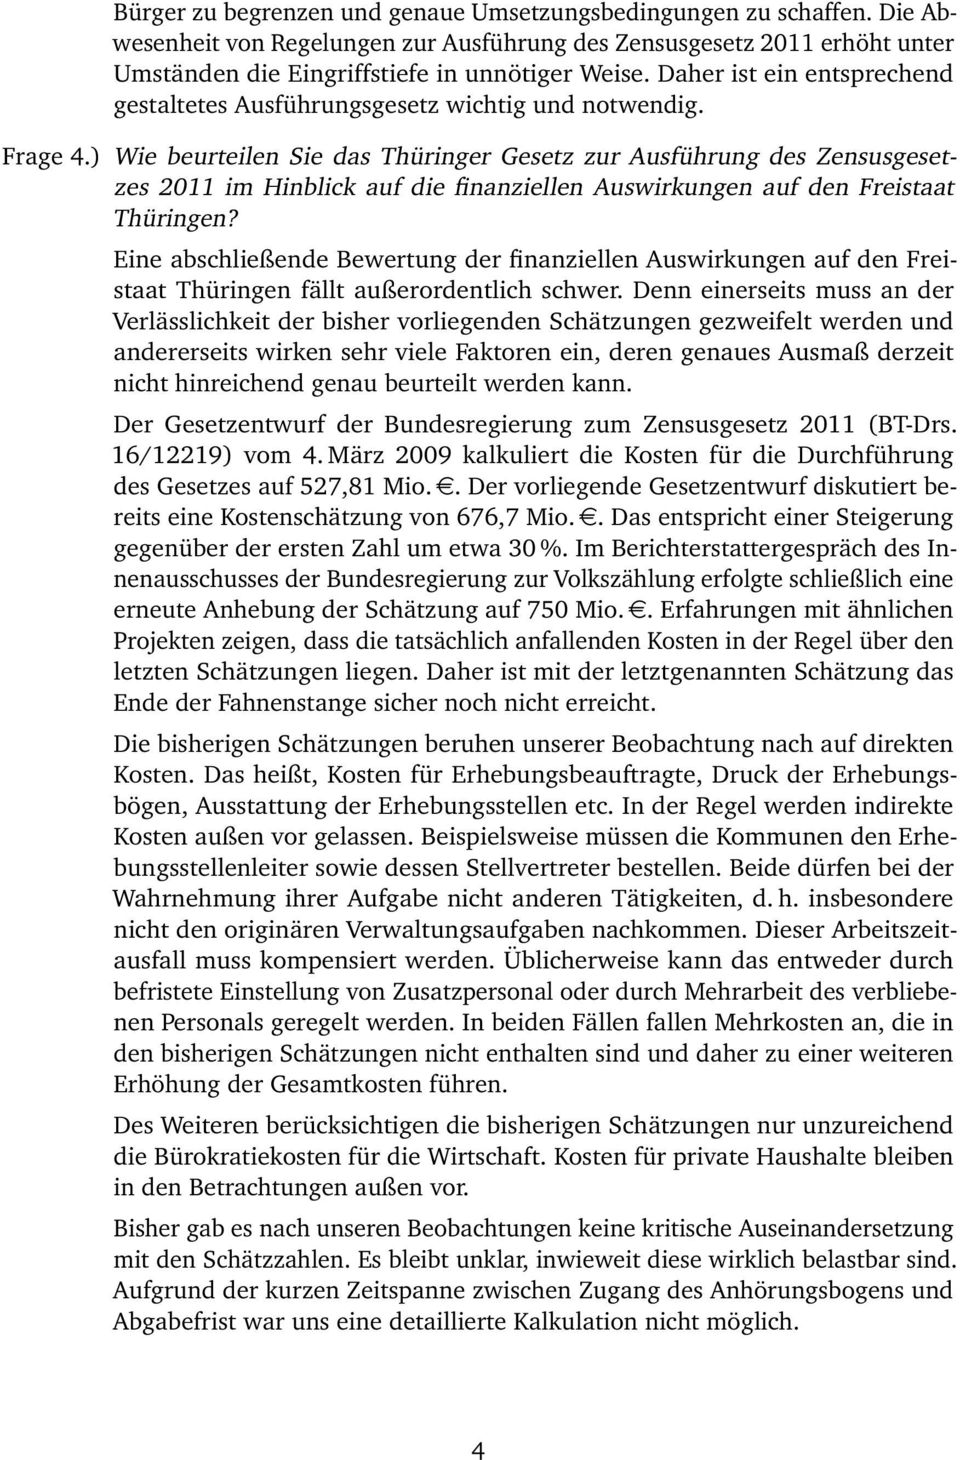 ) Wie beurteilen Sie das Thüringer Gesetz zur Ausführung des Zensusgesetzes 2011 im Hinblick auf die finanziellen Auswirkungen auf den Freistaat Thüringen?